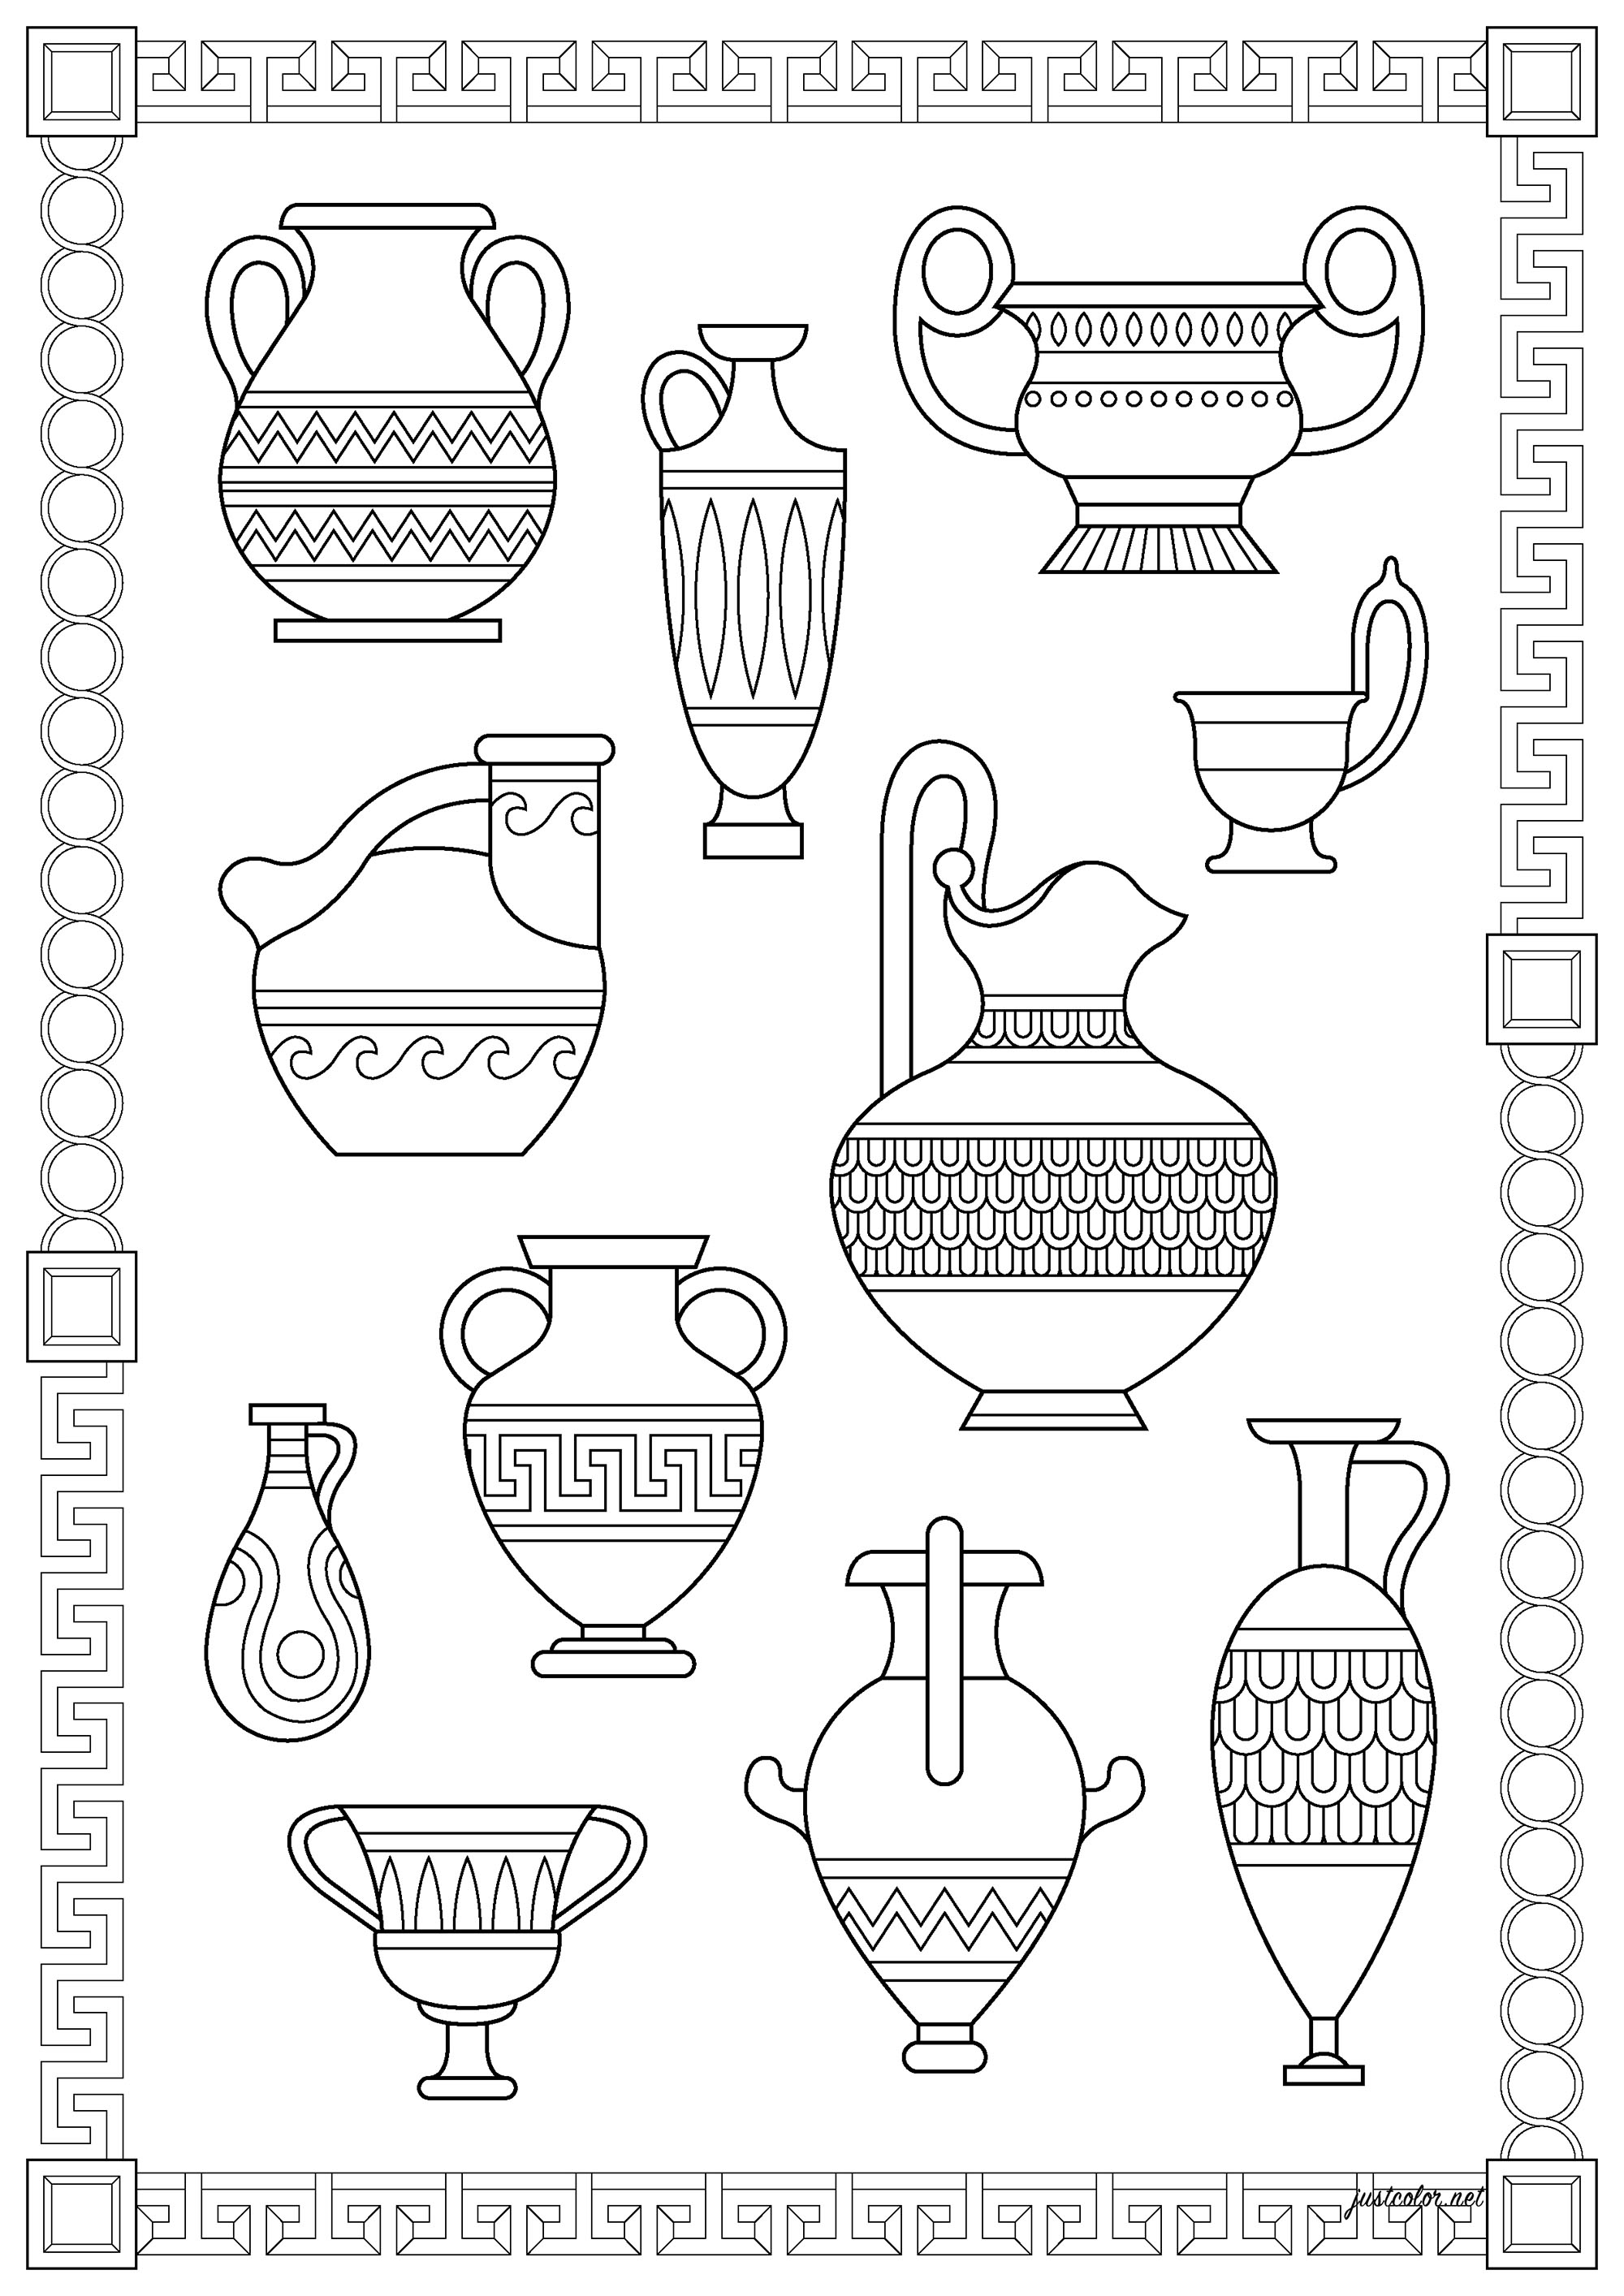 Inventar der verschiedenen griechischen Vasen. Die Keramik des antiken Griechenlands aus der Zeit von ca. 1000 bis ca. 400 v. Chr. bietet einige der ältesten und vielfältigsten Darstellungen der kulturellen Überzeugungen und Praktiken der alten Griechen sowie einige der charakteristischsten Vasenformen der Antike.